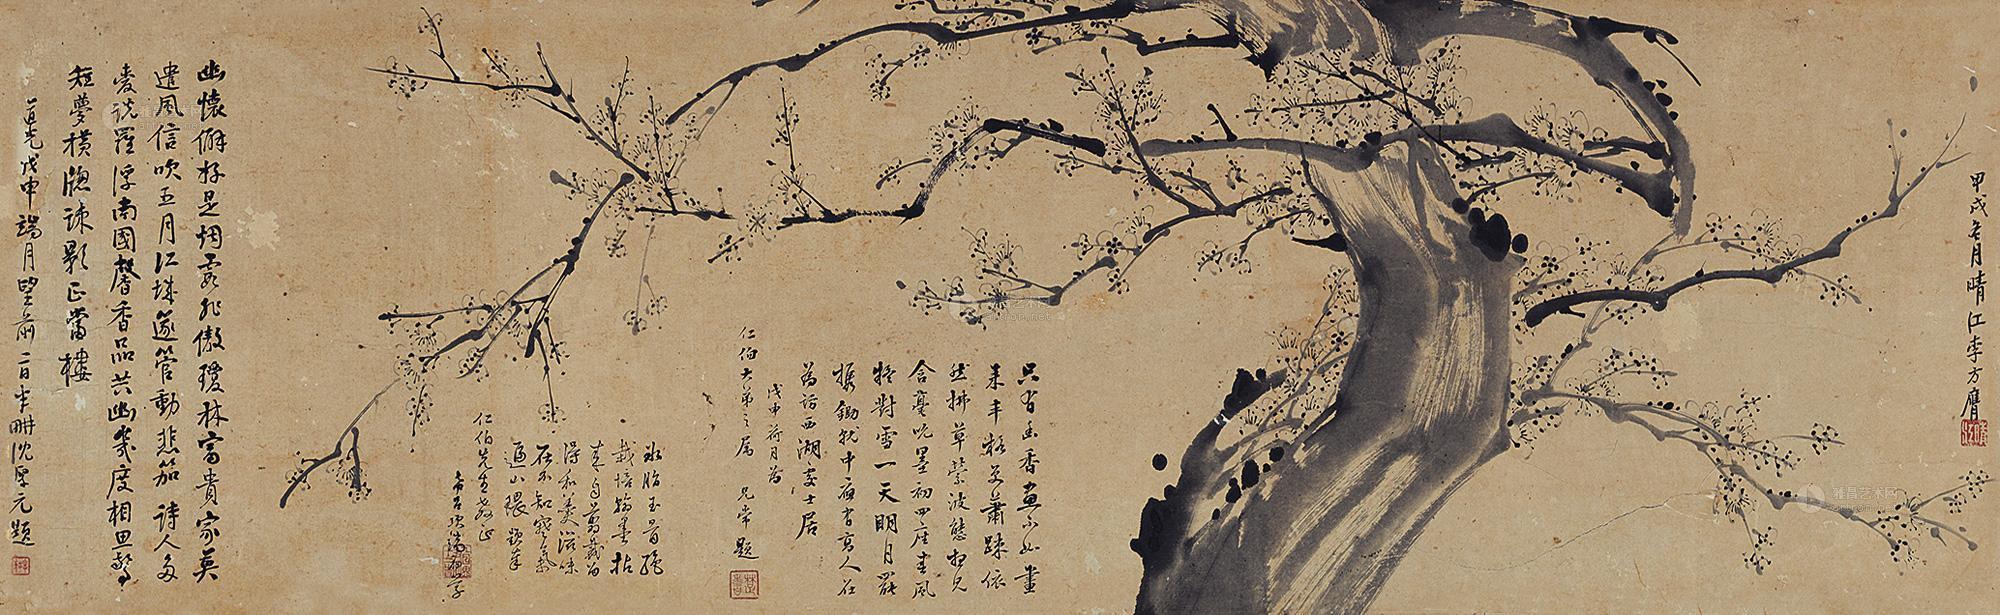 梅花 镜片作者李方膺 (1679～1755后)拍品分类中国书画